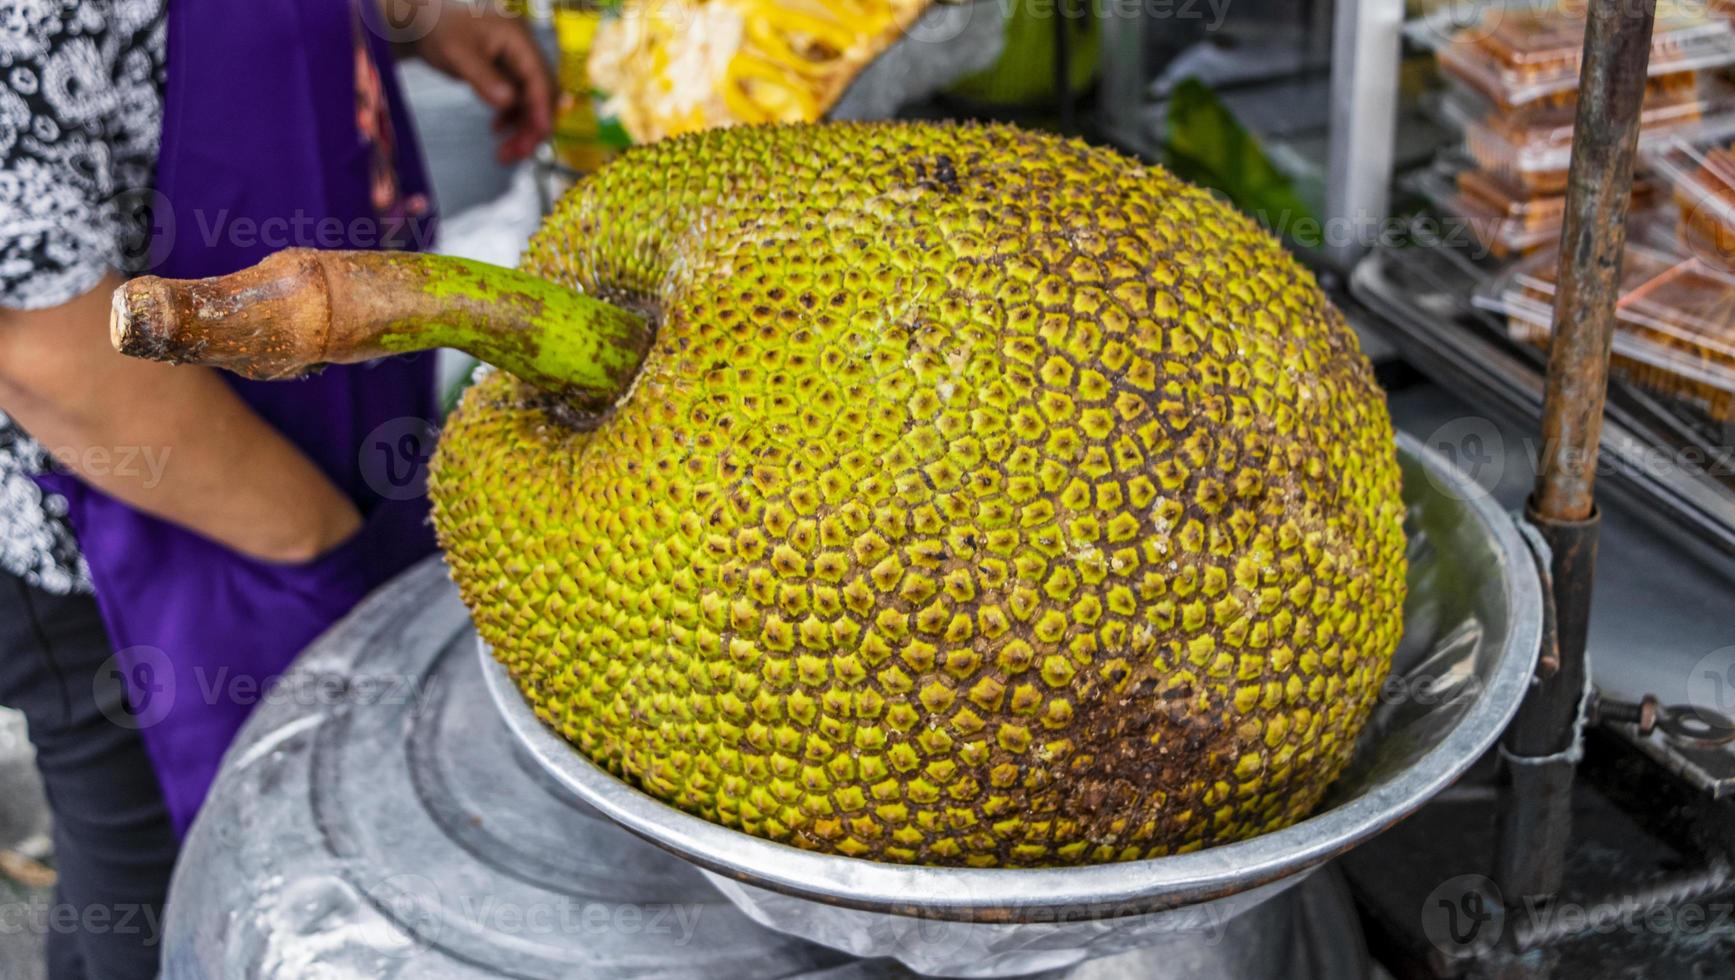 enorme jackfruit al cibo di strada a bangkok in thailandia. foto